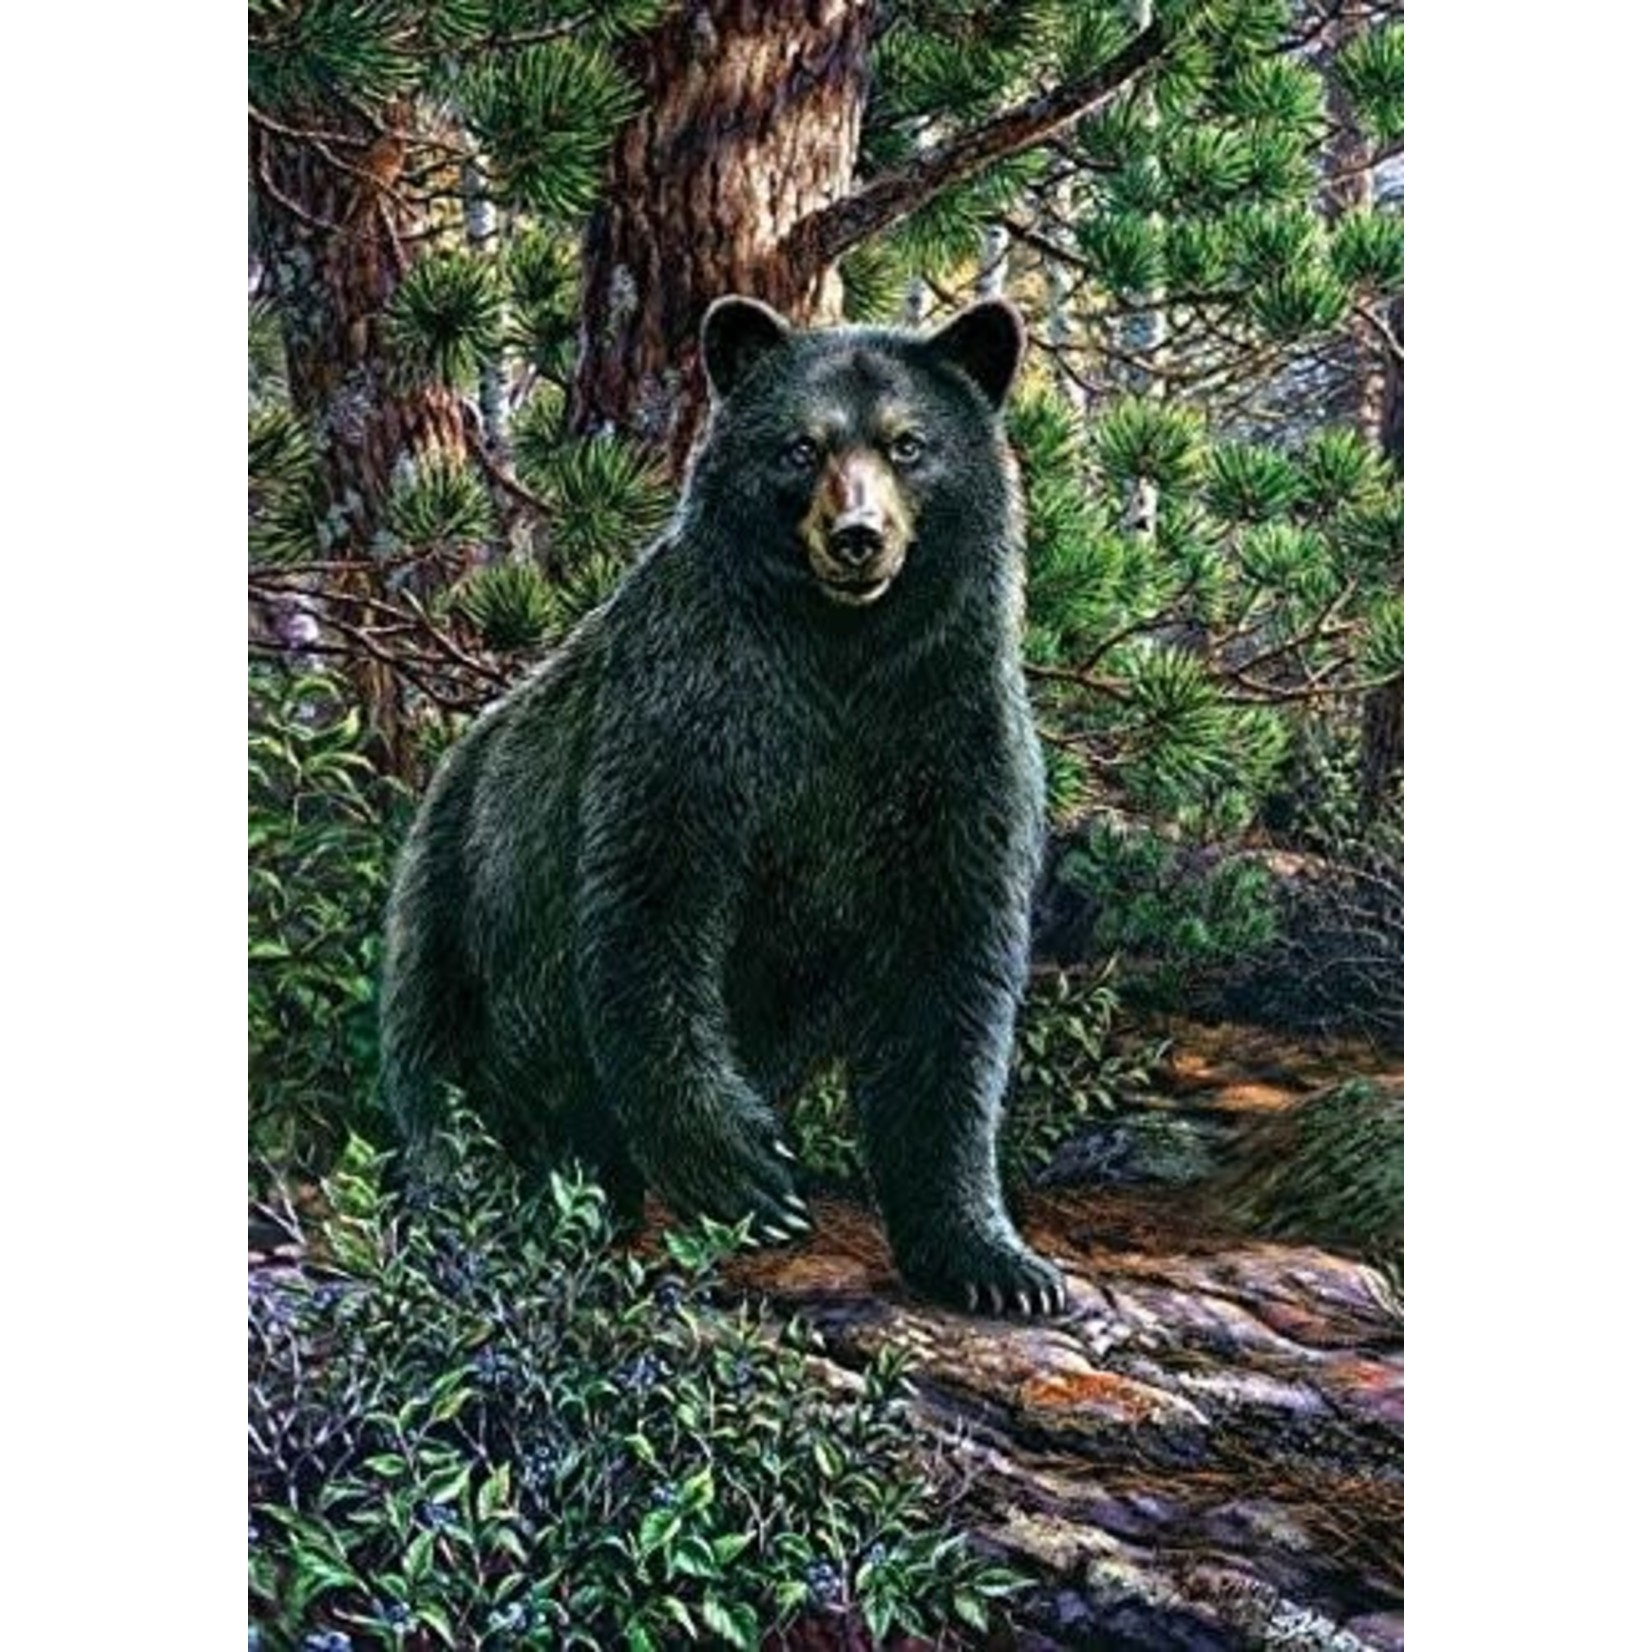 Black bear in Woods grdn flag